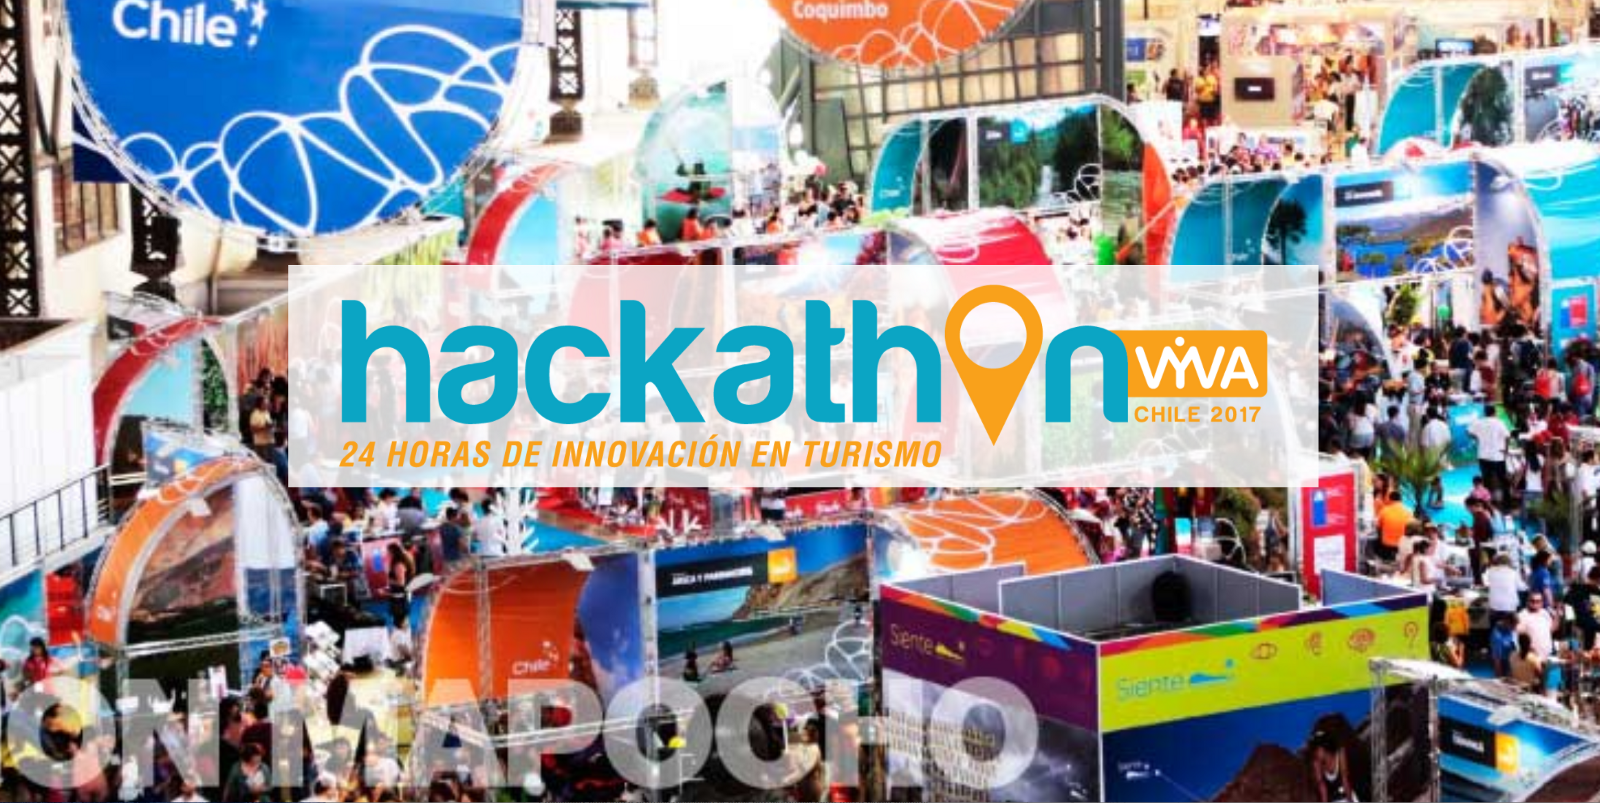 Hackathon VYVA 2017: competencia tecnológica inédita en turismo aportó innovadores proyectos a la industria